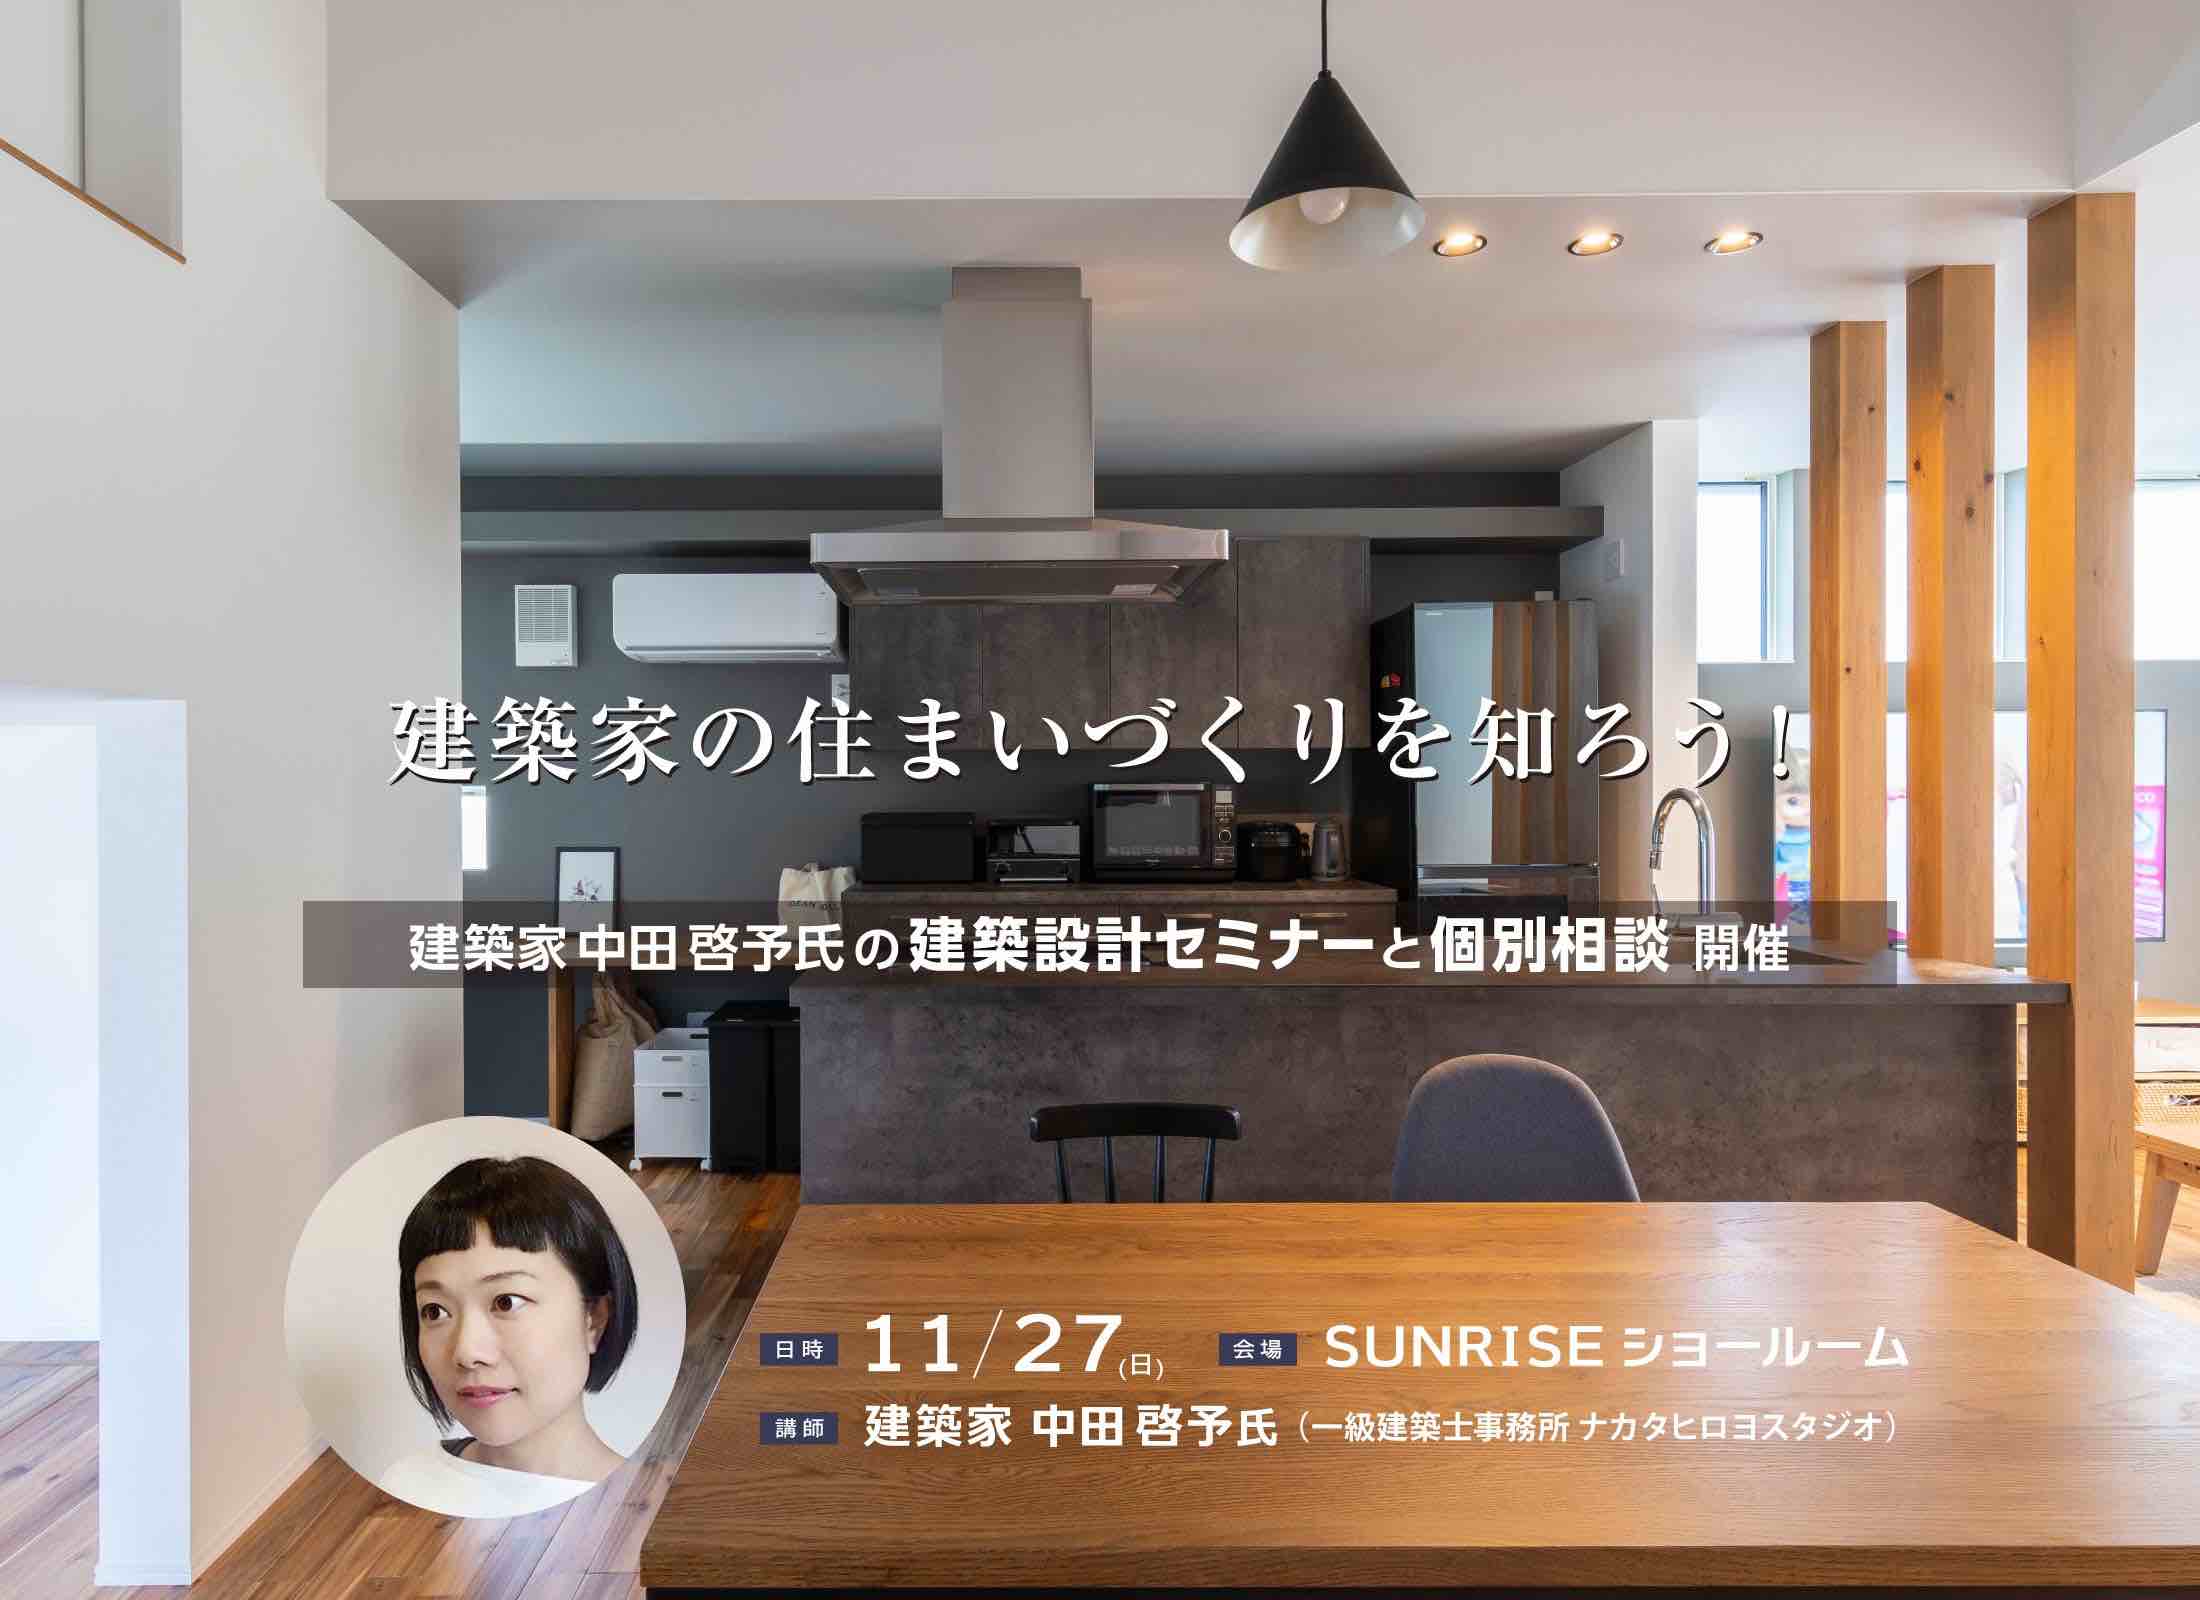 2022/10/23 第41回 賢い家づくり勉強会 @松本市勤労者福祉センター